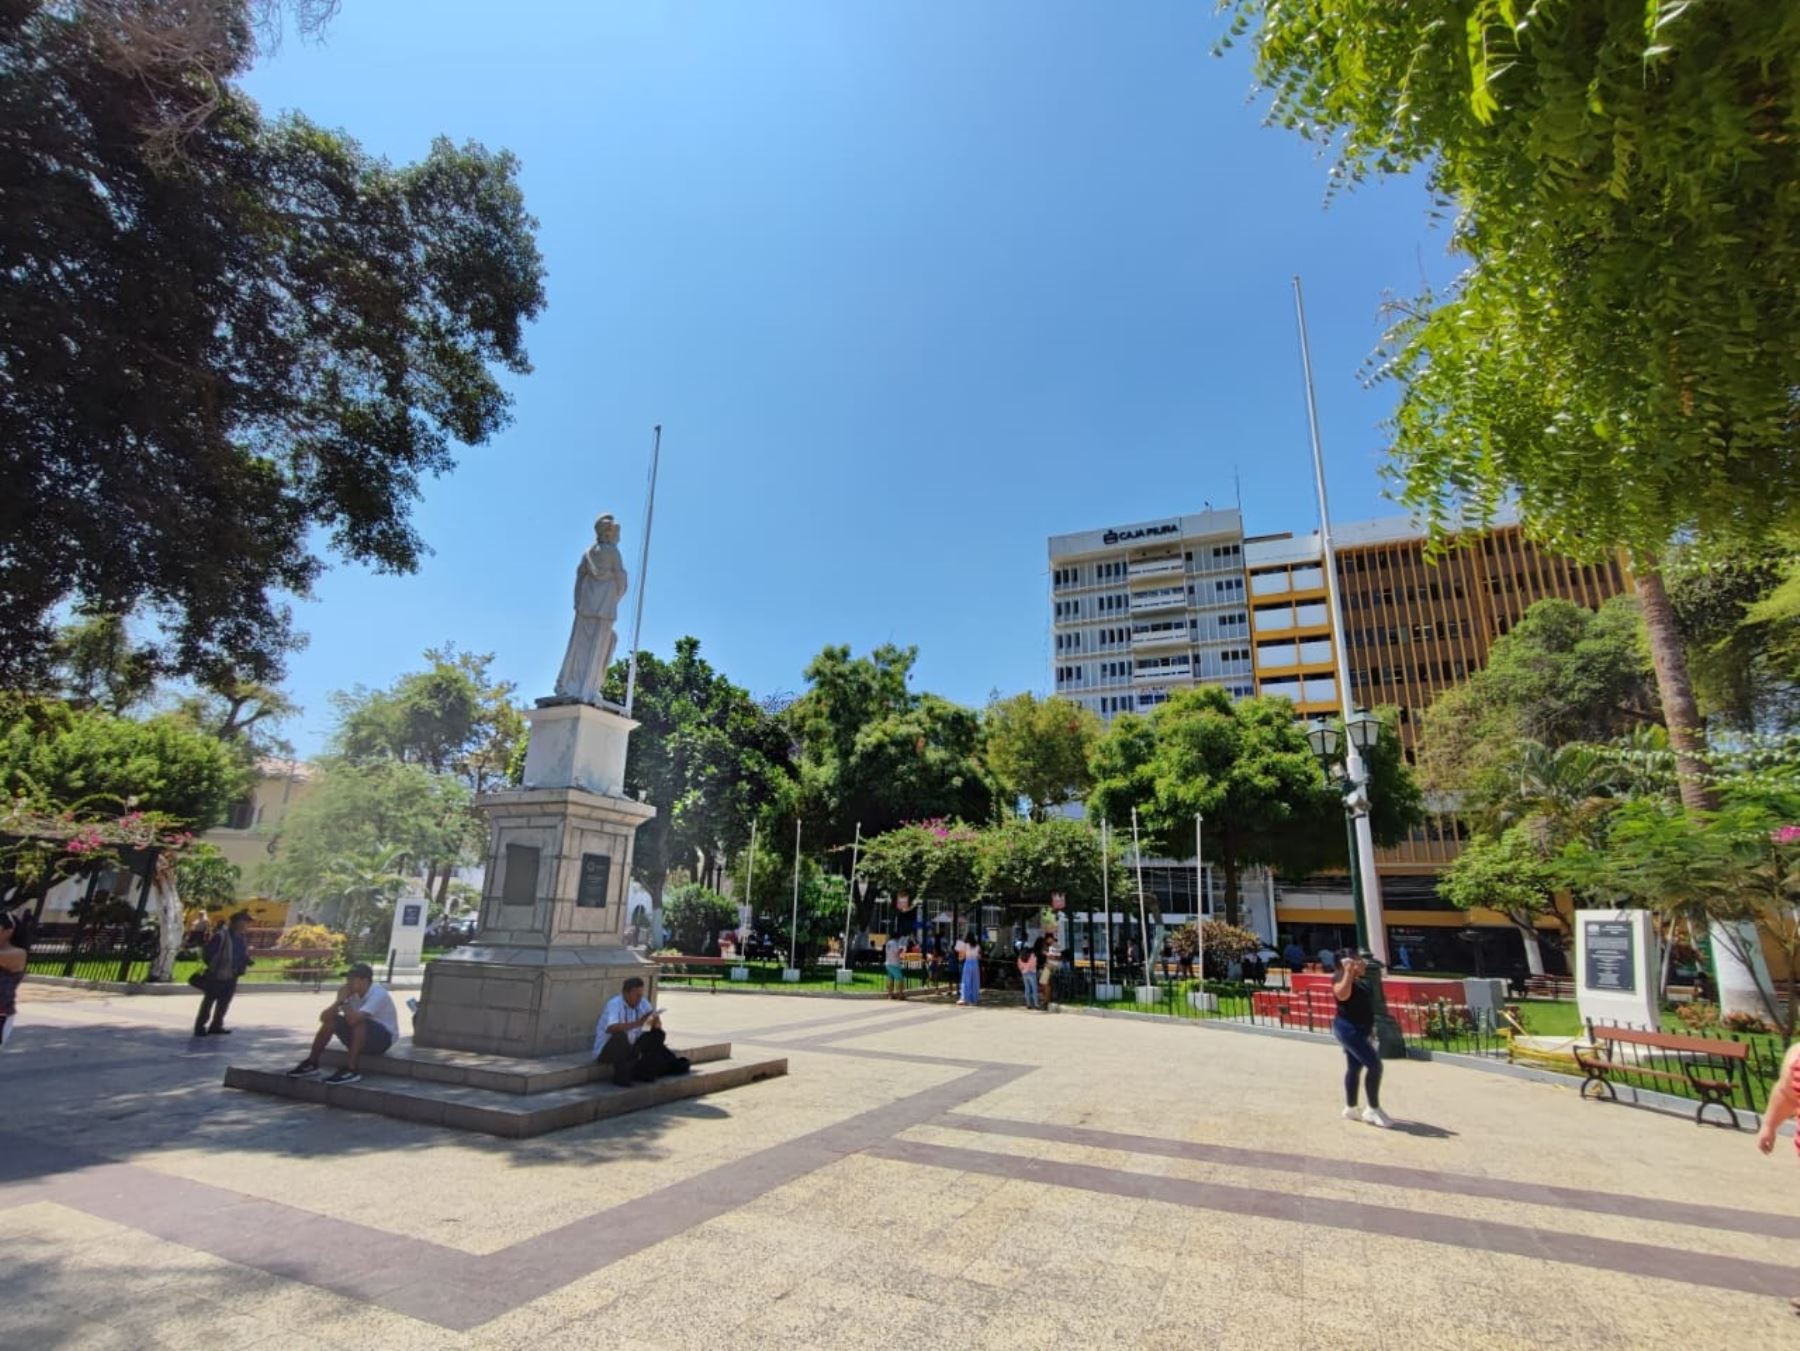 La ciudad de Piura podría registrar una temperatura máxima de 38 grados Celsius, una de las más altas que se presentarán en la Costa peruana. Foto: Mario Moncada.